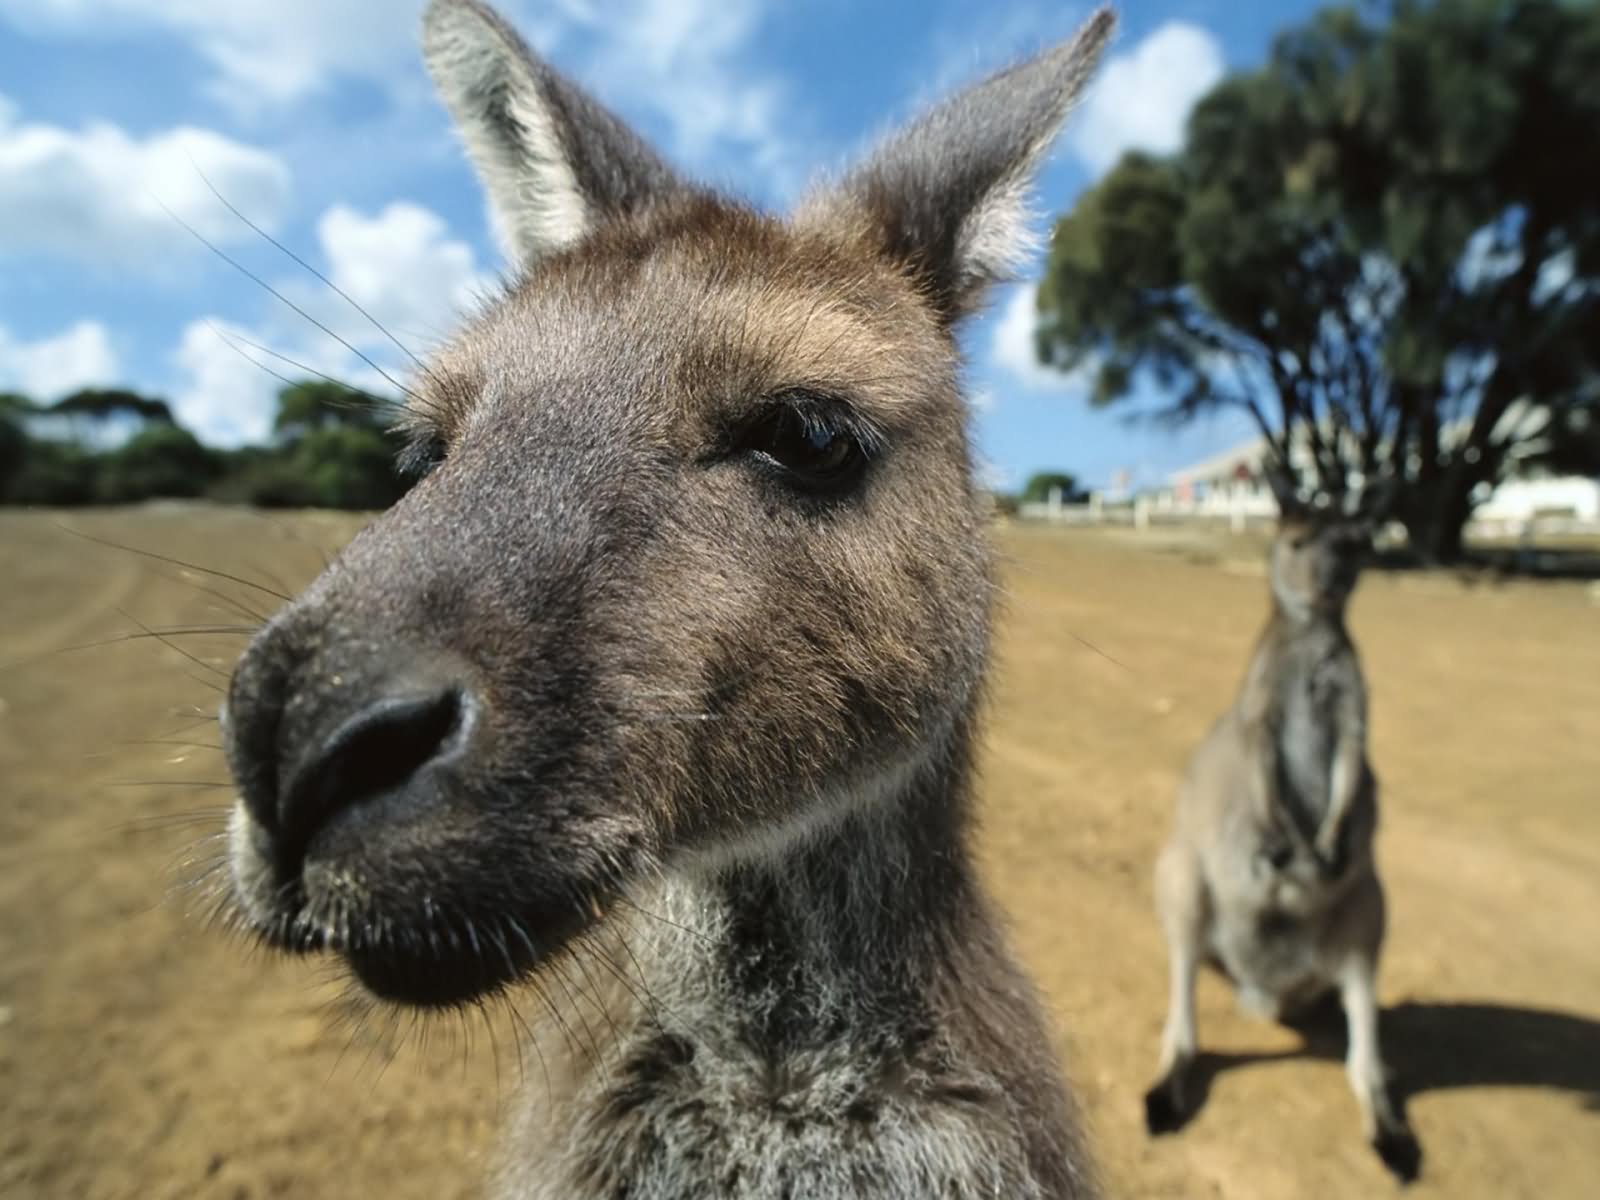 Kangaroo Closeup Sad Face Funny Photo